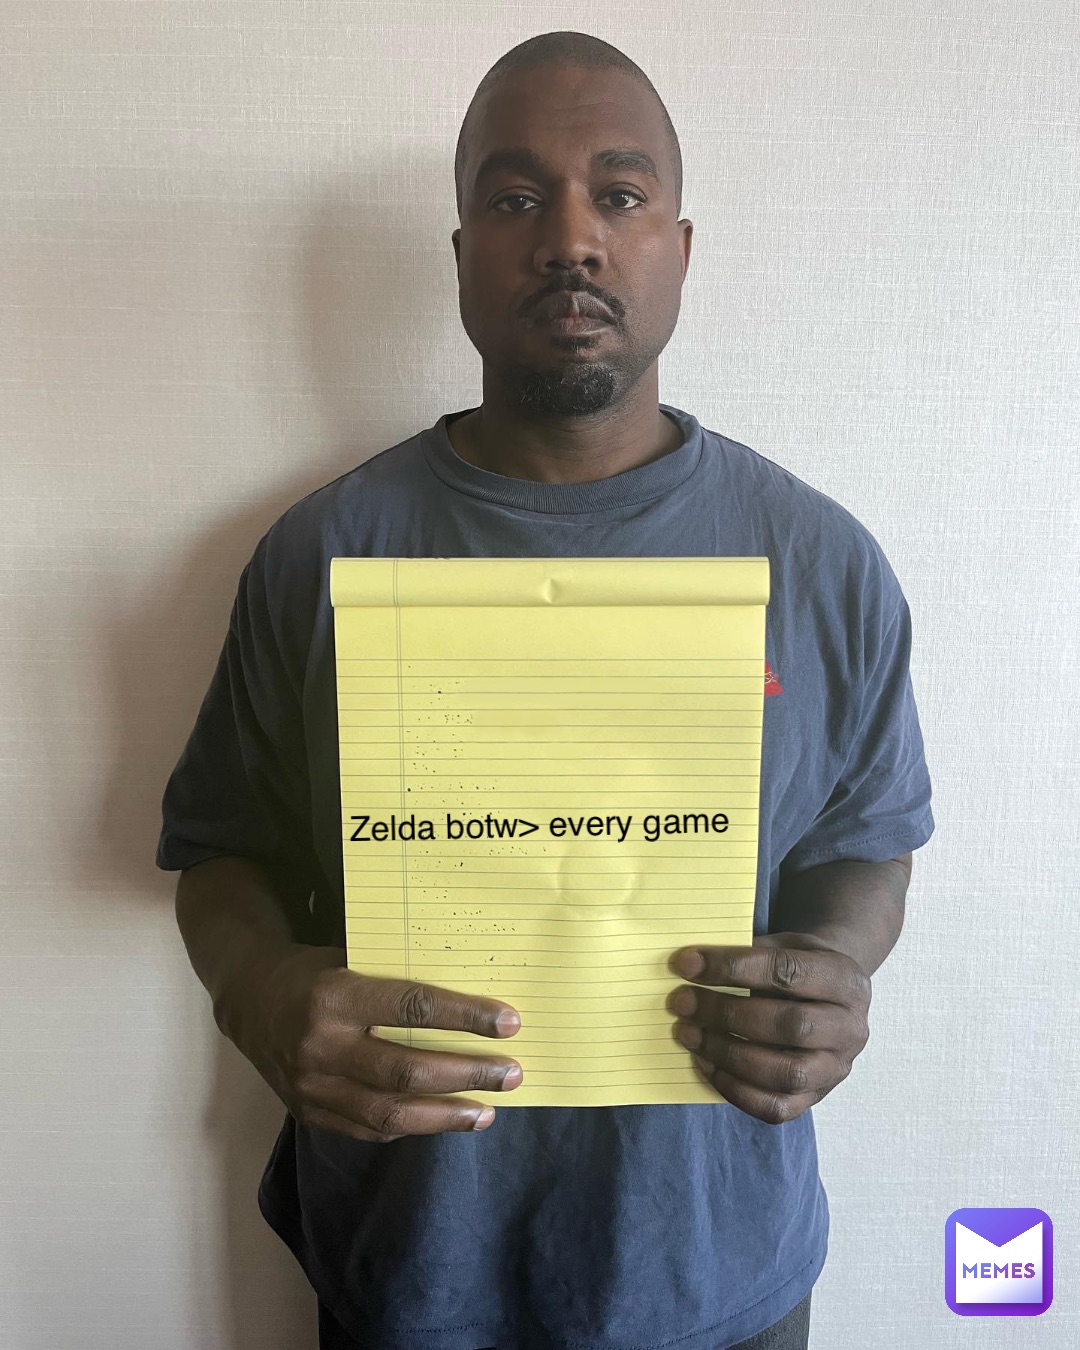 Zelda botw> every game